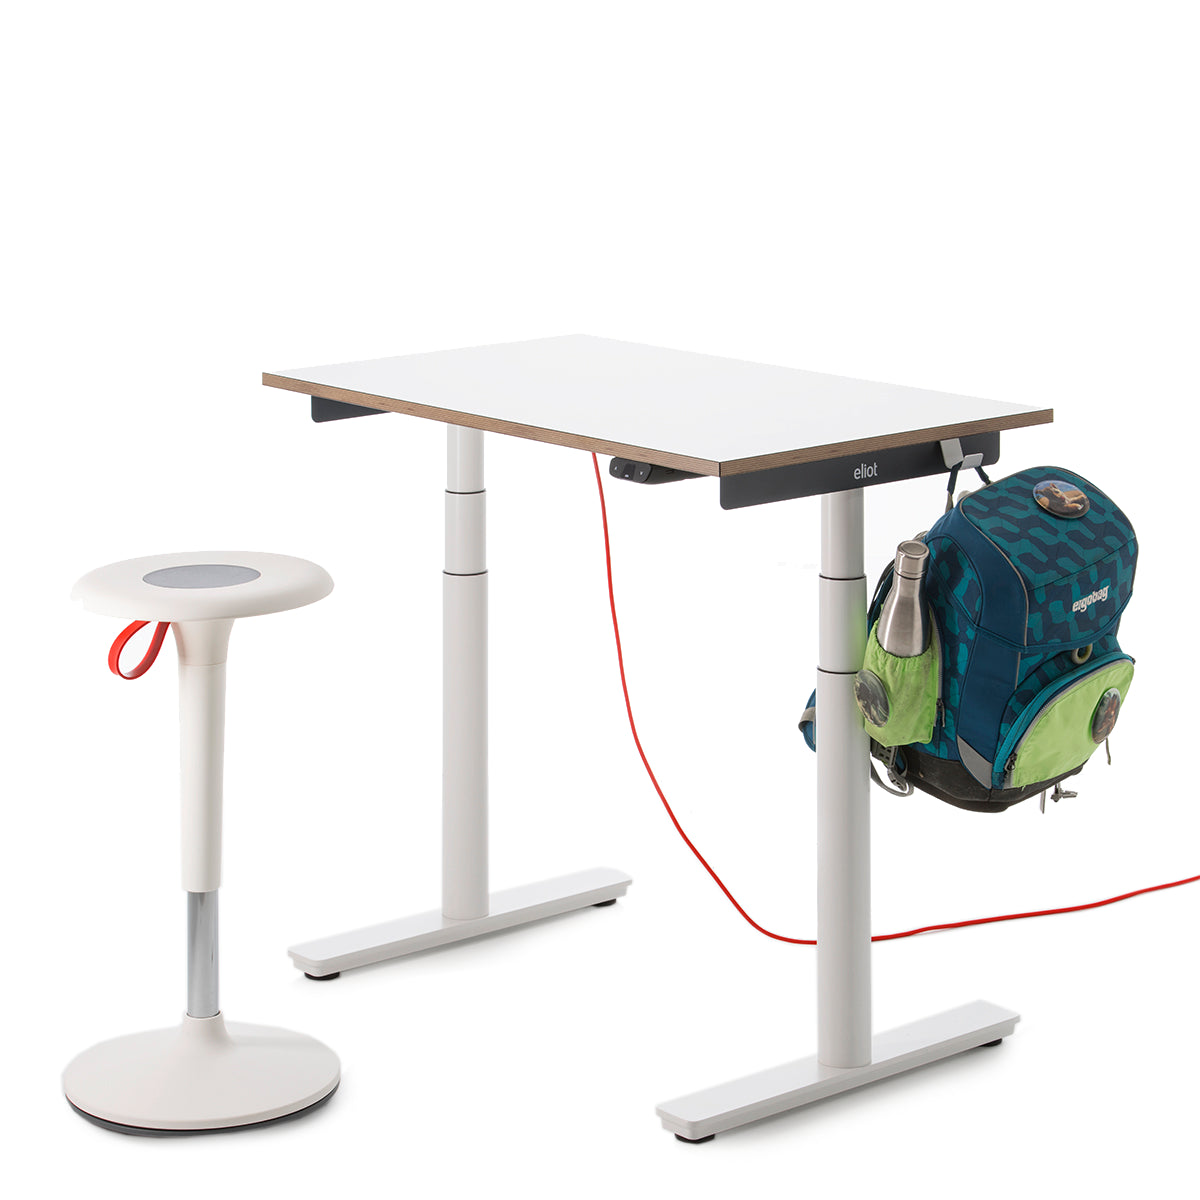 Höhenverstellbarer Schreibtisch Tiny, samt Schulranzen, der an einem Haken hängt und ein weißer Hocker Lio